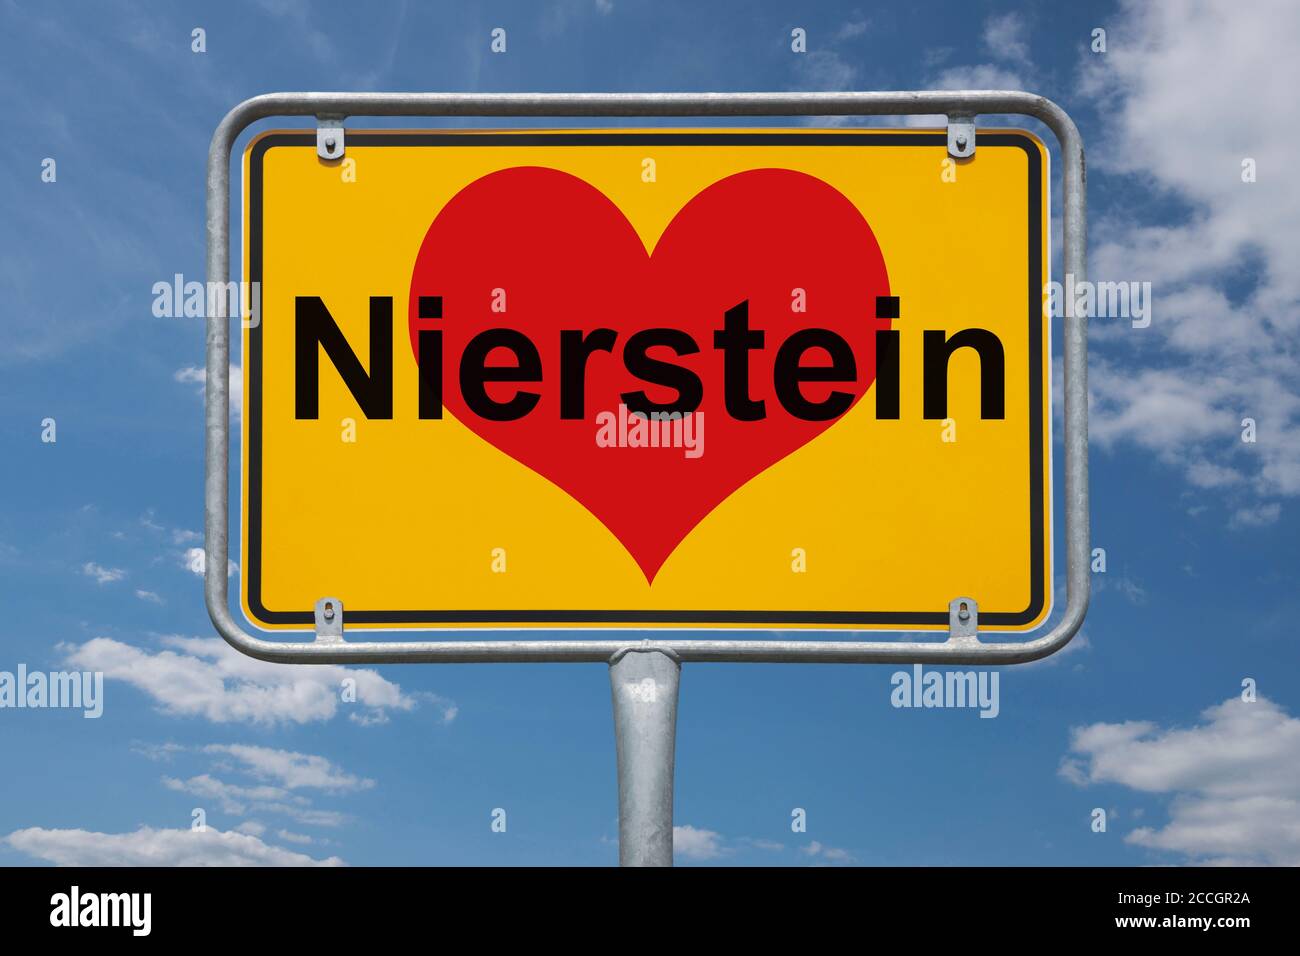 Ortstafel Nierstein, Rheinland-Pfalz, Deutschland | Place name sign Nierstein, Rhineland-Palatinate, Germany, Europe Stock Photo